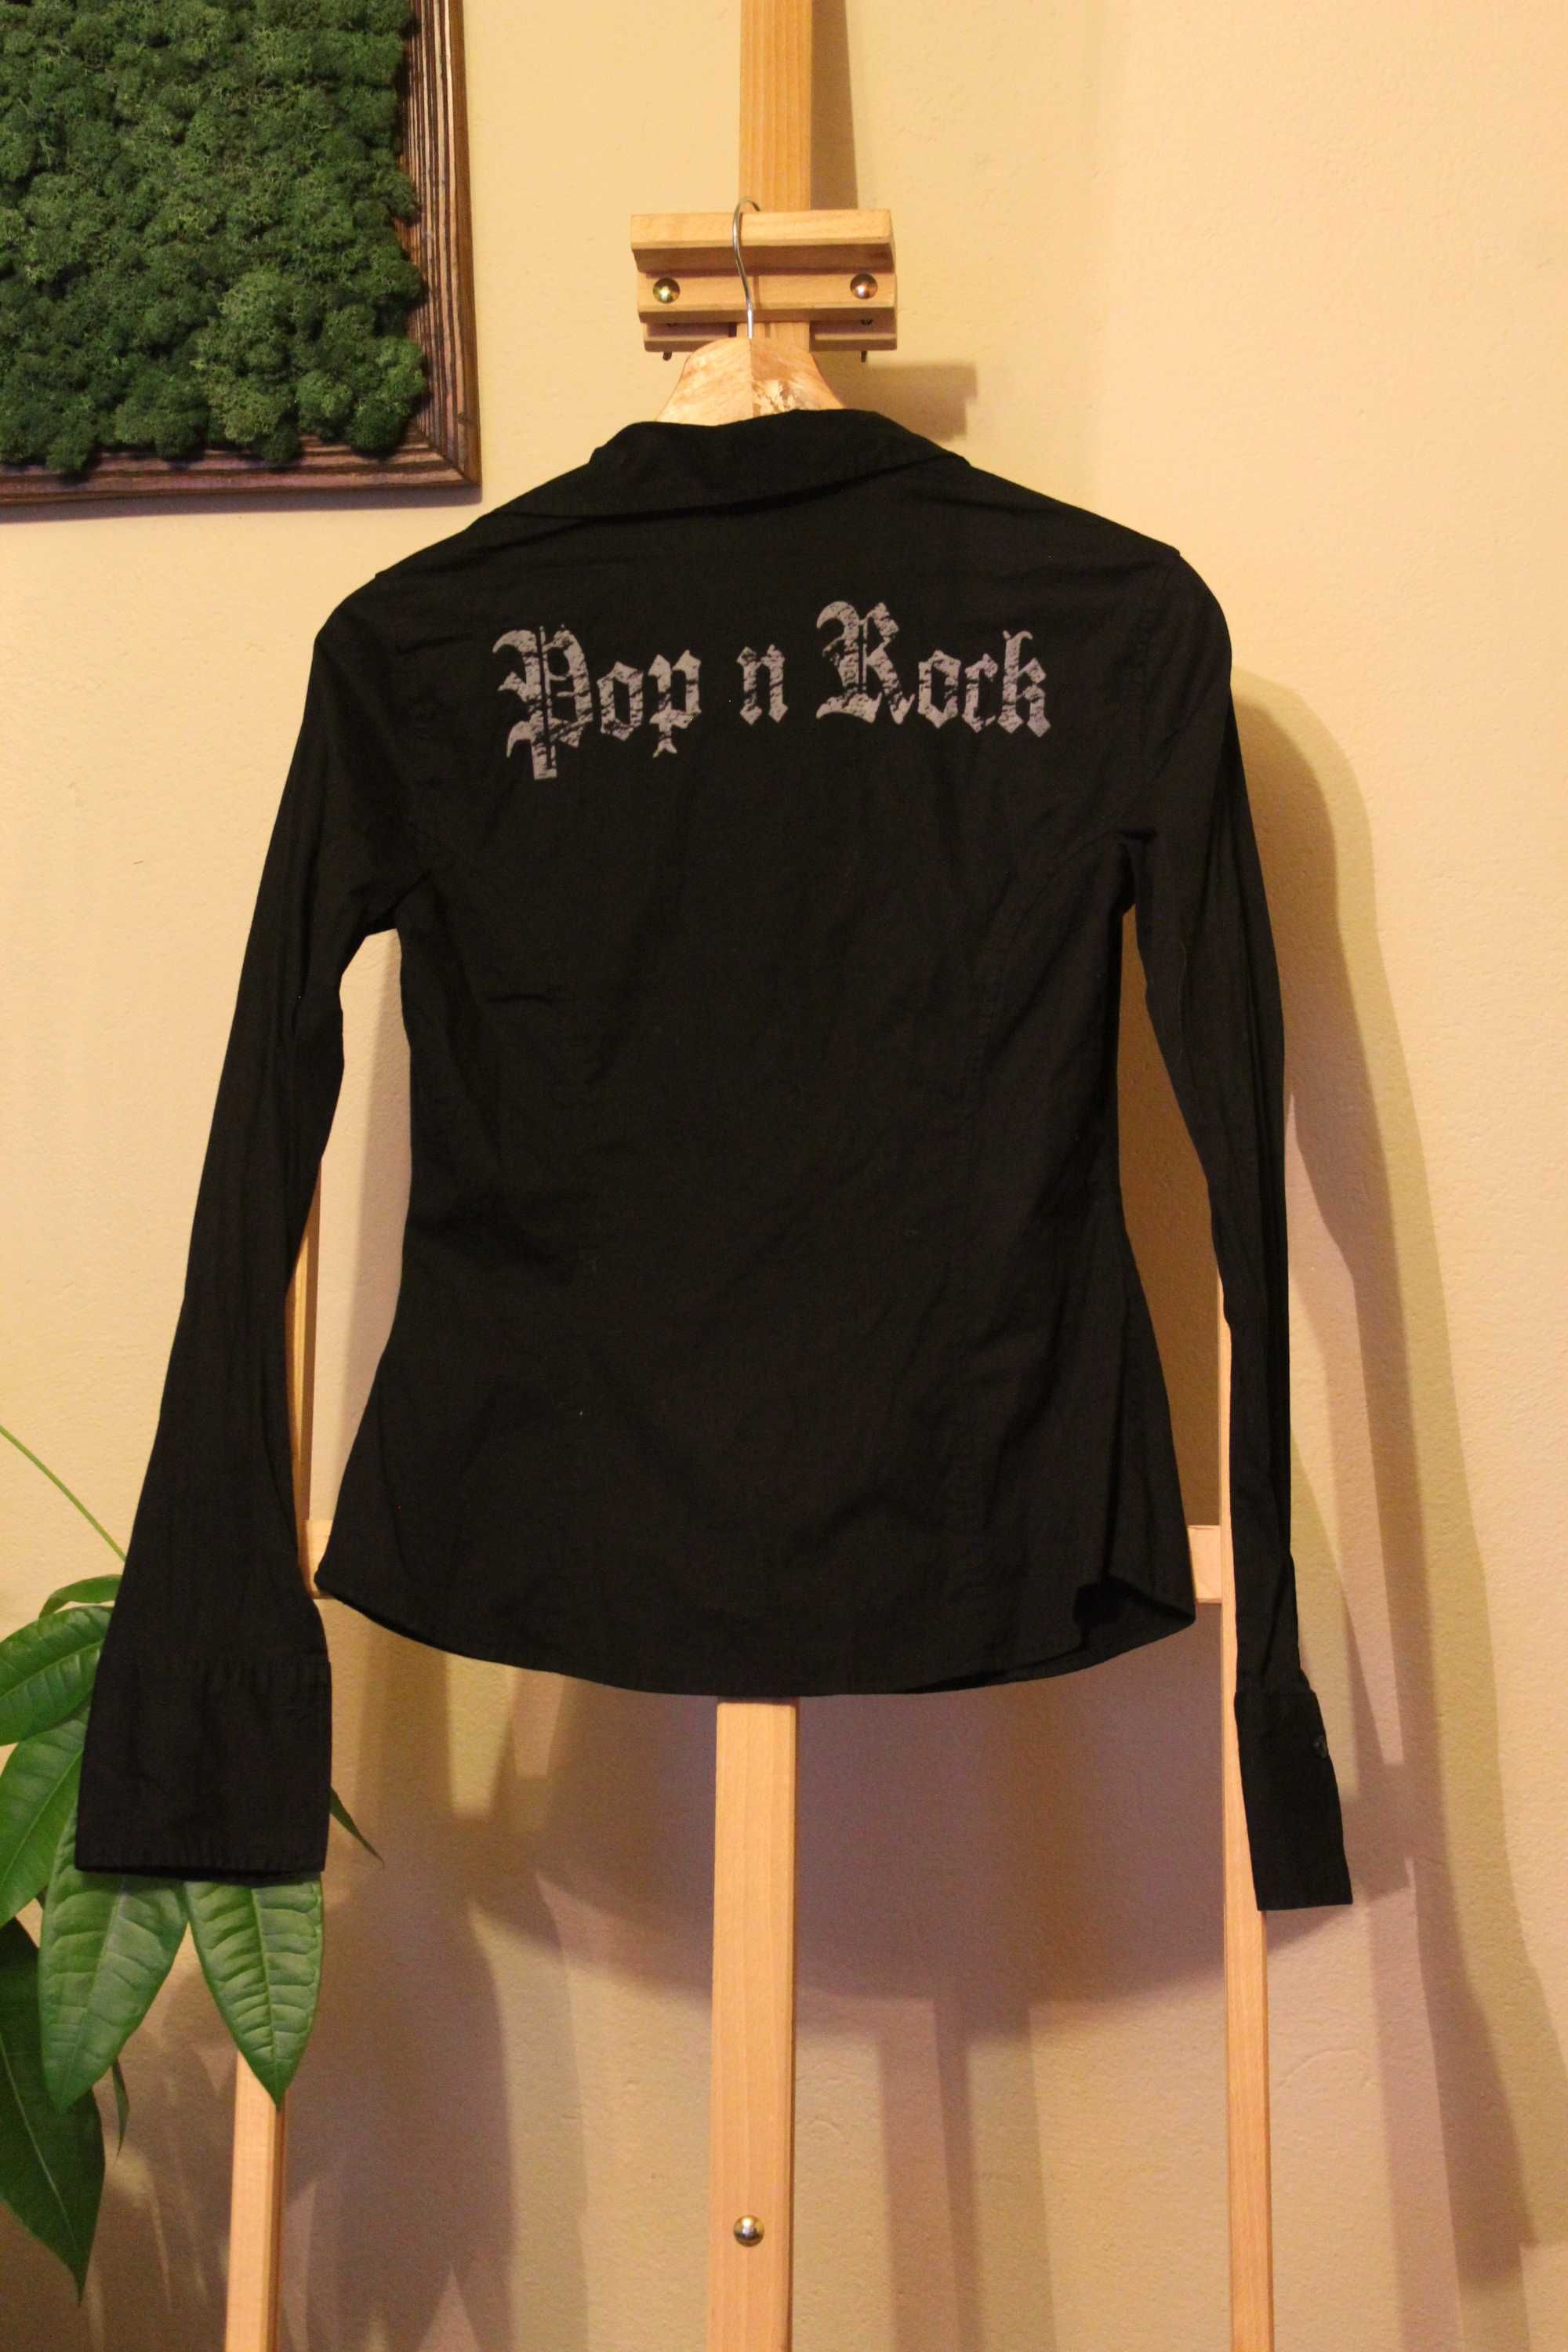 Czarna koszula z napisem Pop & Rock